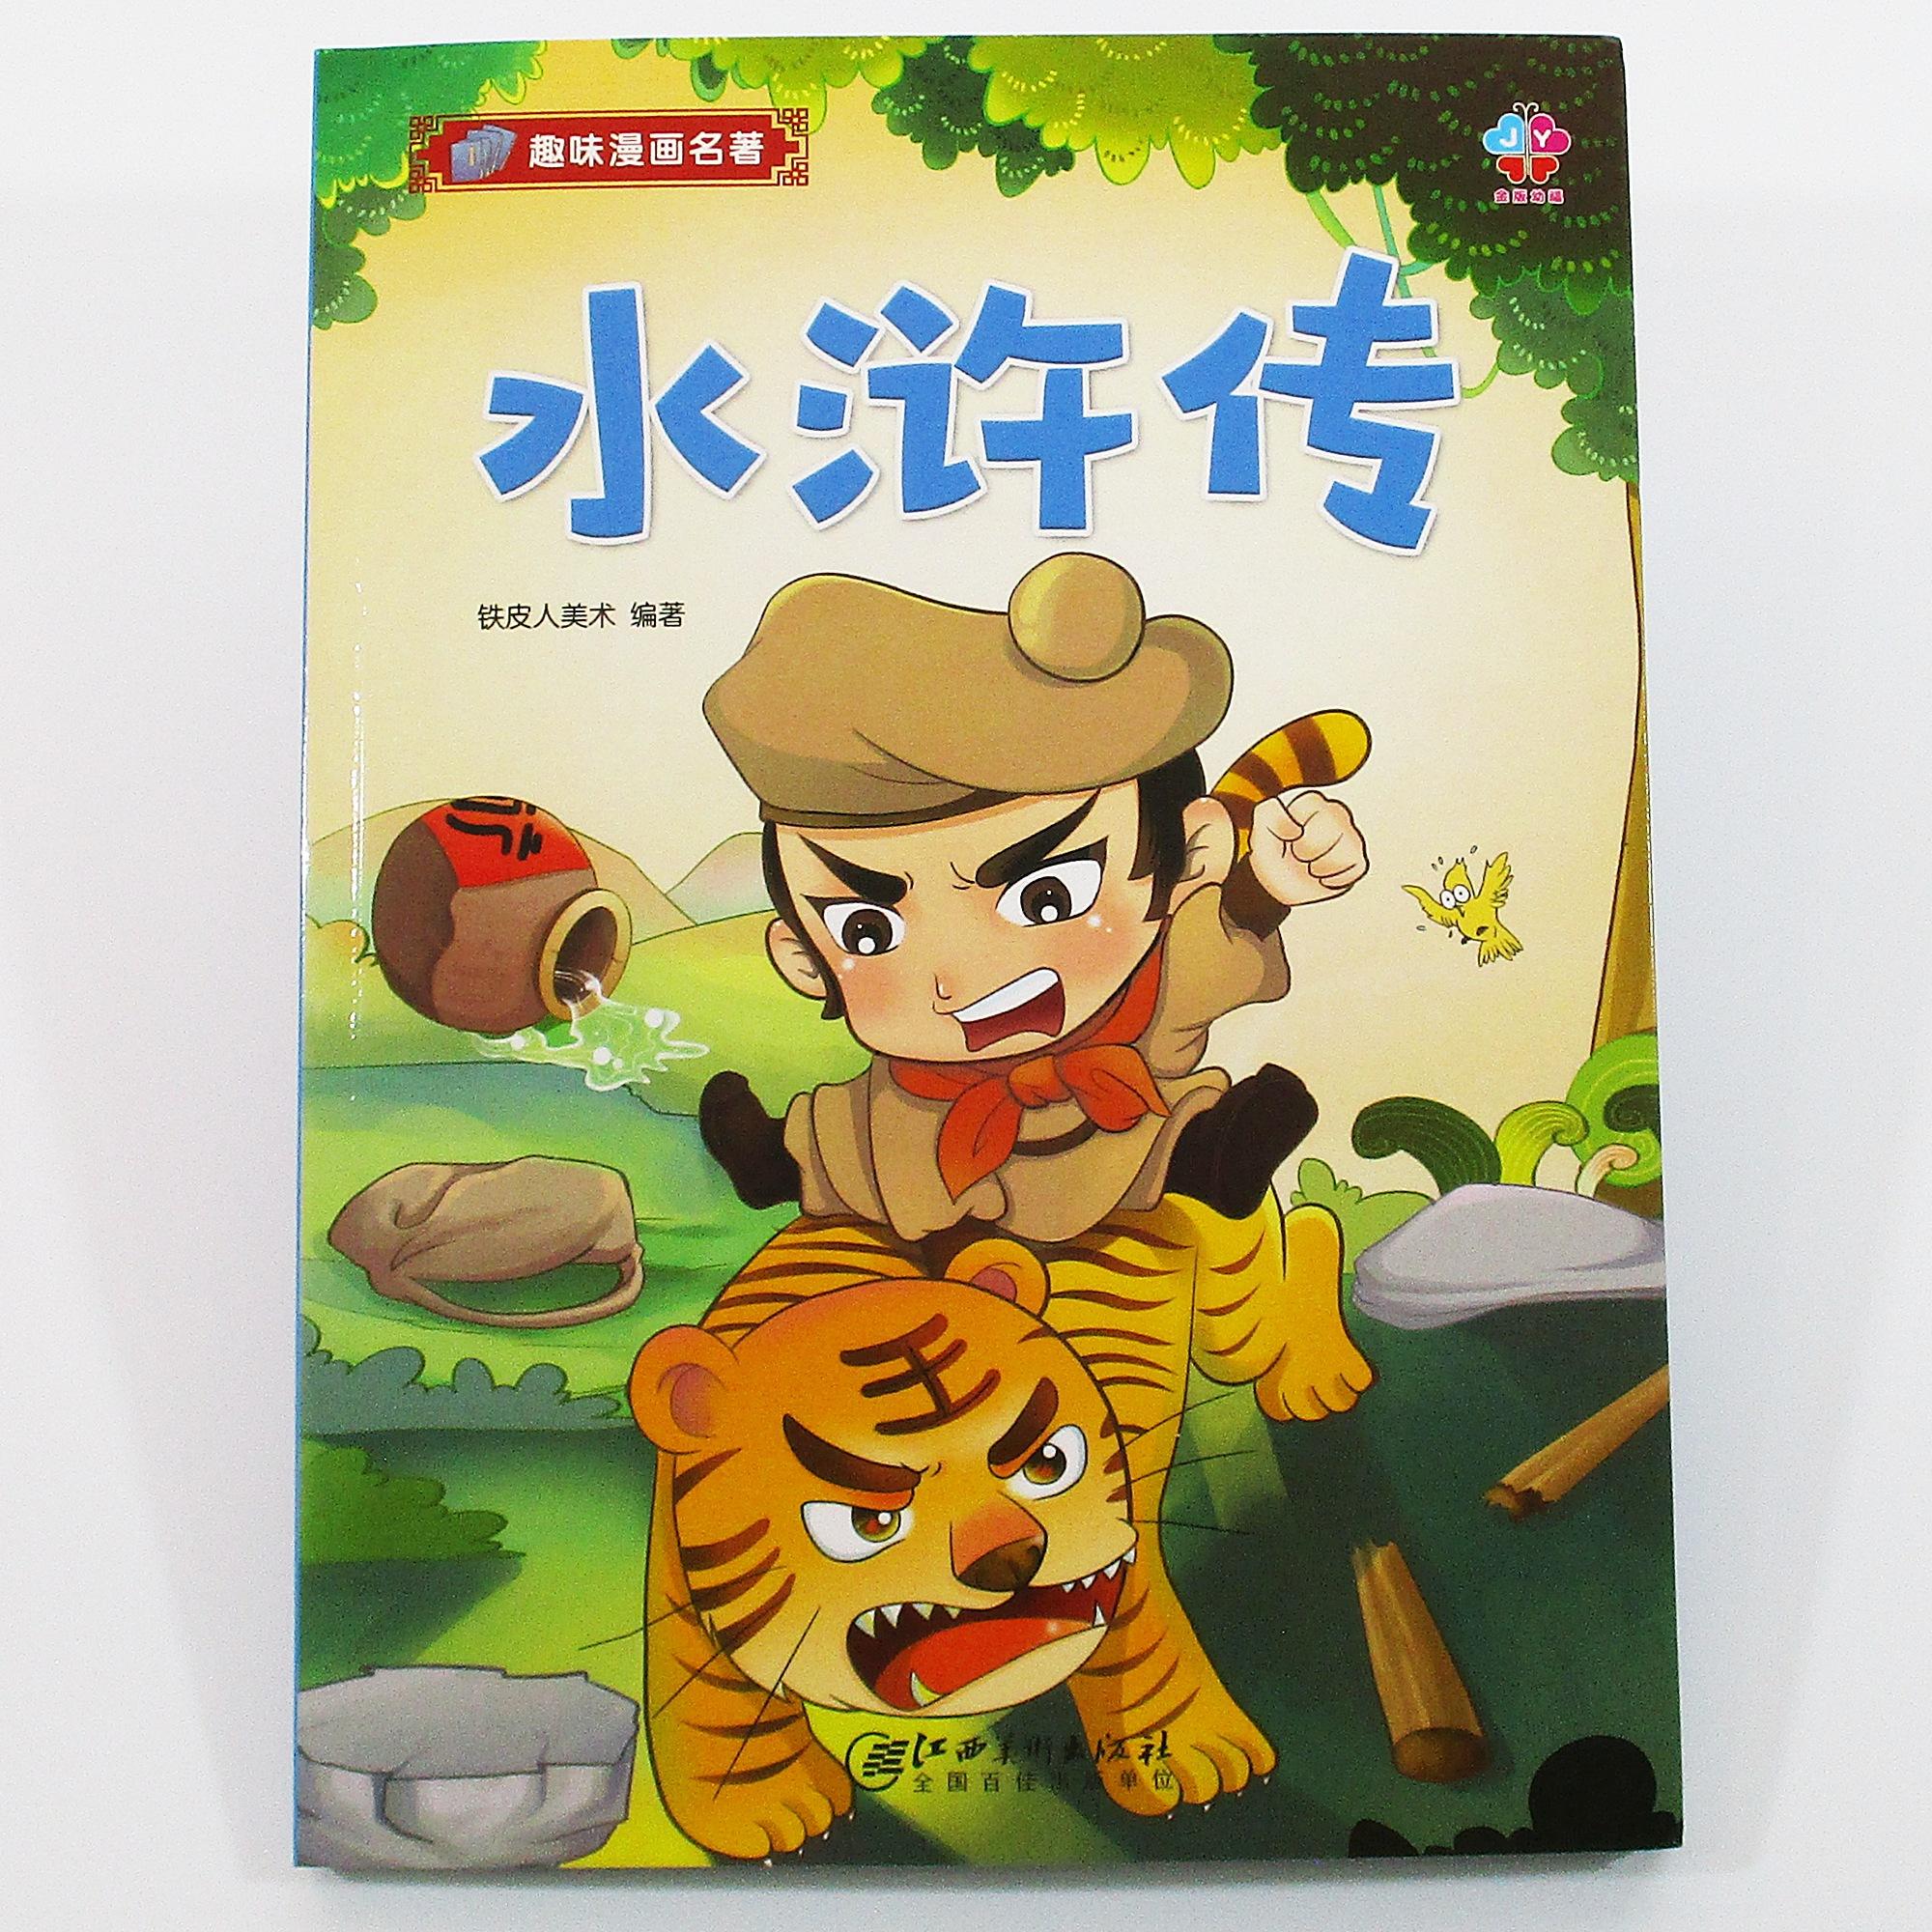 หนังสืออ่านนอกเวลาภาษาจีน เรื่อง วีรบุรุษเขาเหลียงซาน